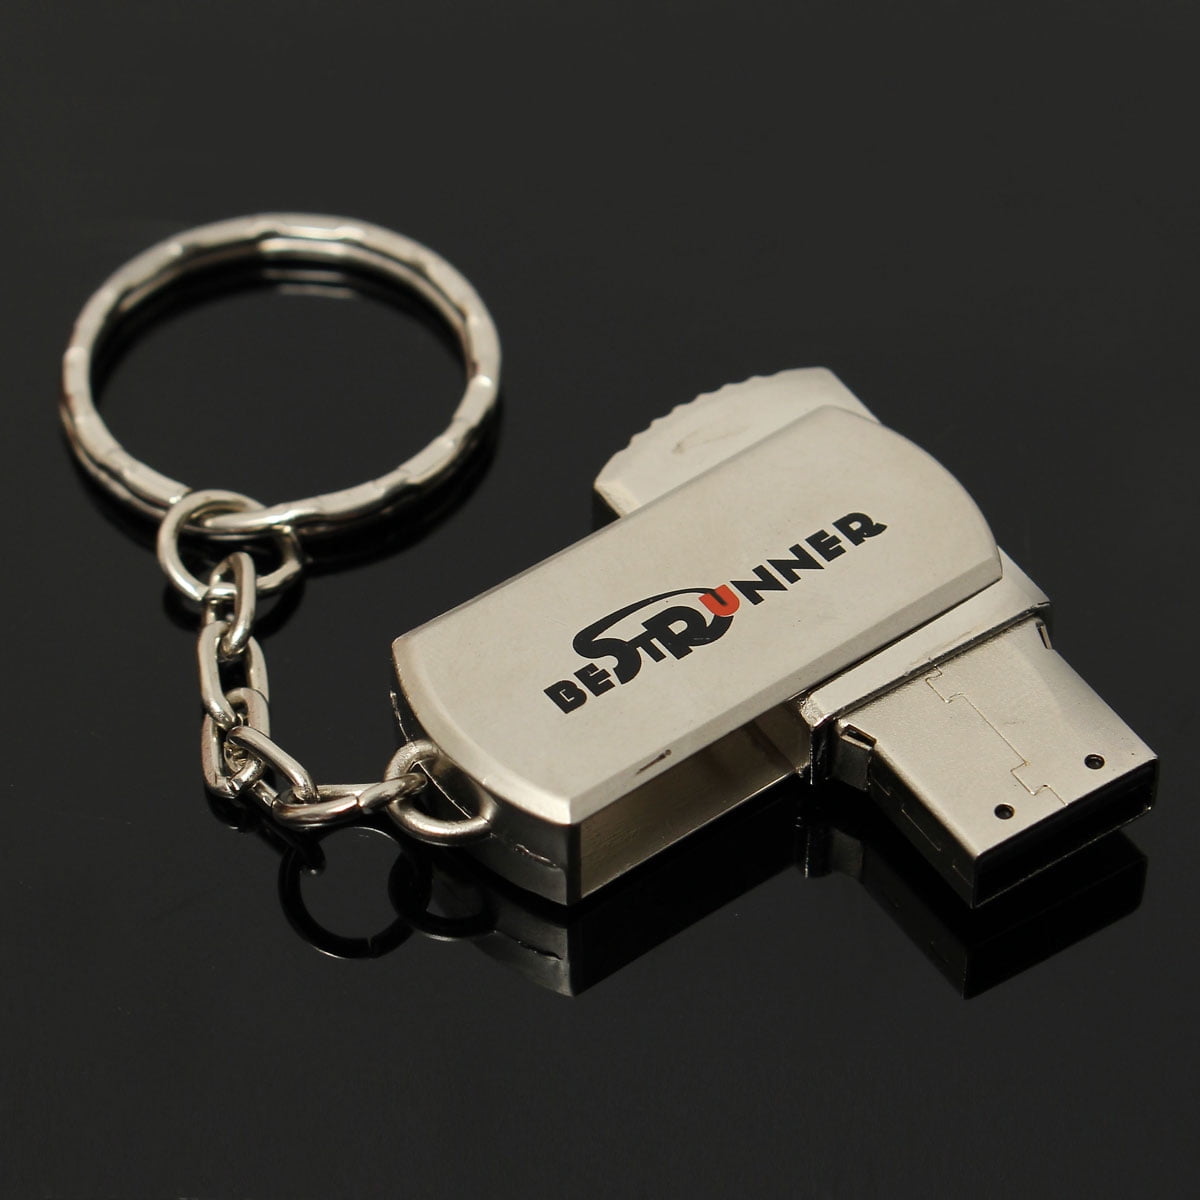 4gb USB Stick cromato CHIAVE Keychain-Scarlett STAR-USB Flash Drive 